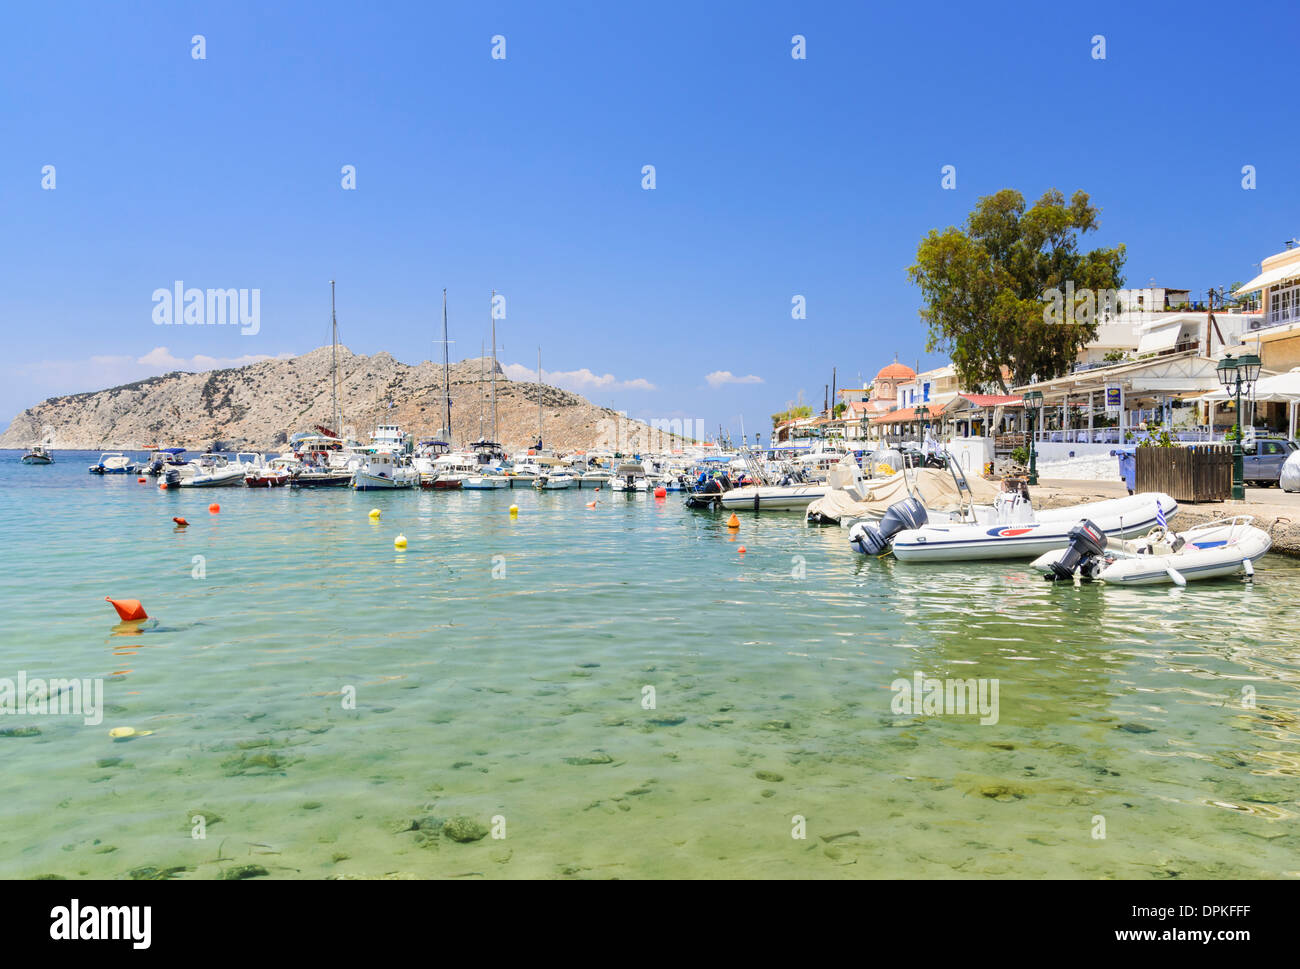 Schön am Meer Stadt von Perdika auf Aegina Insel im Saronischen Golf,  Griechenland Stockfotografie - Alamy